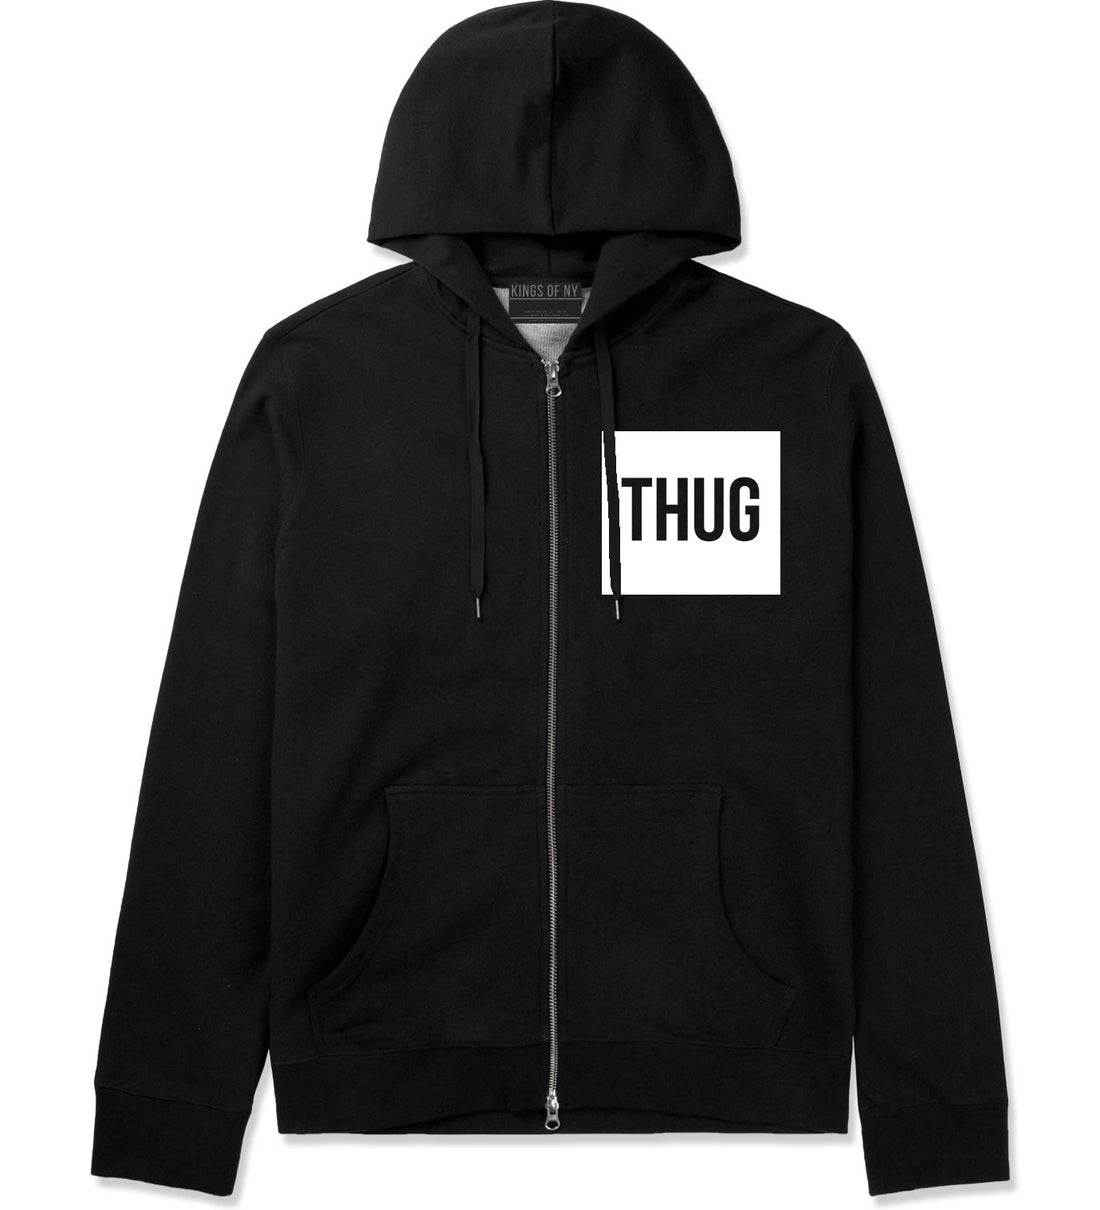 Thug Gangsta Box Logo Zip Up Hoodie Hoody in Black by Kings Of NY